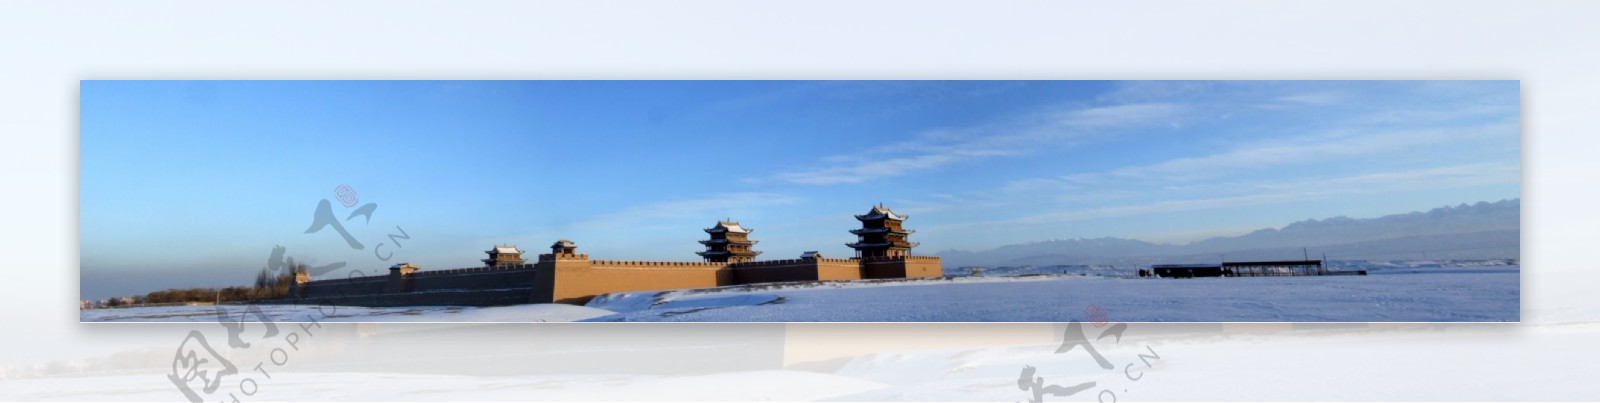 嘉峪关长城雪景图片